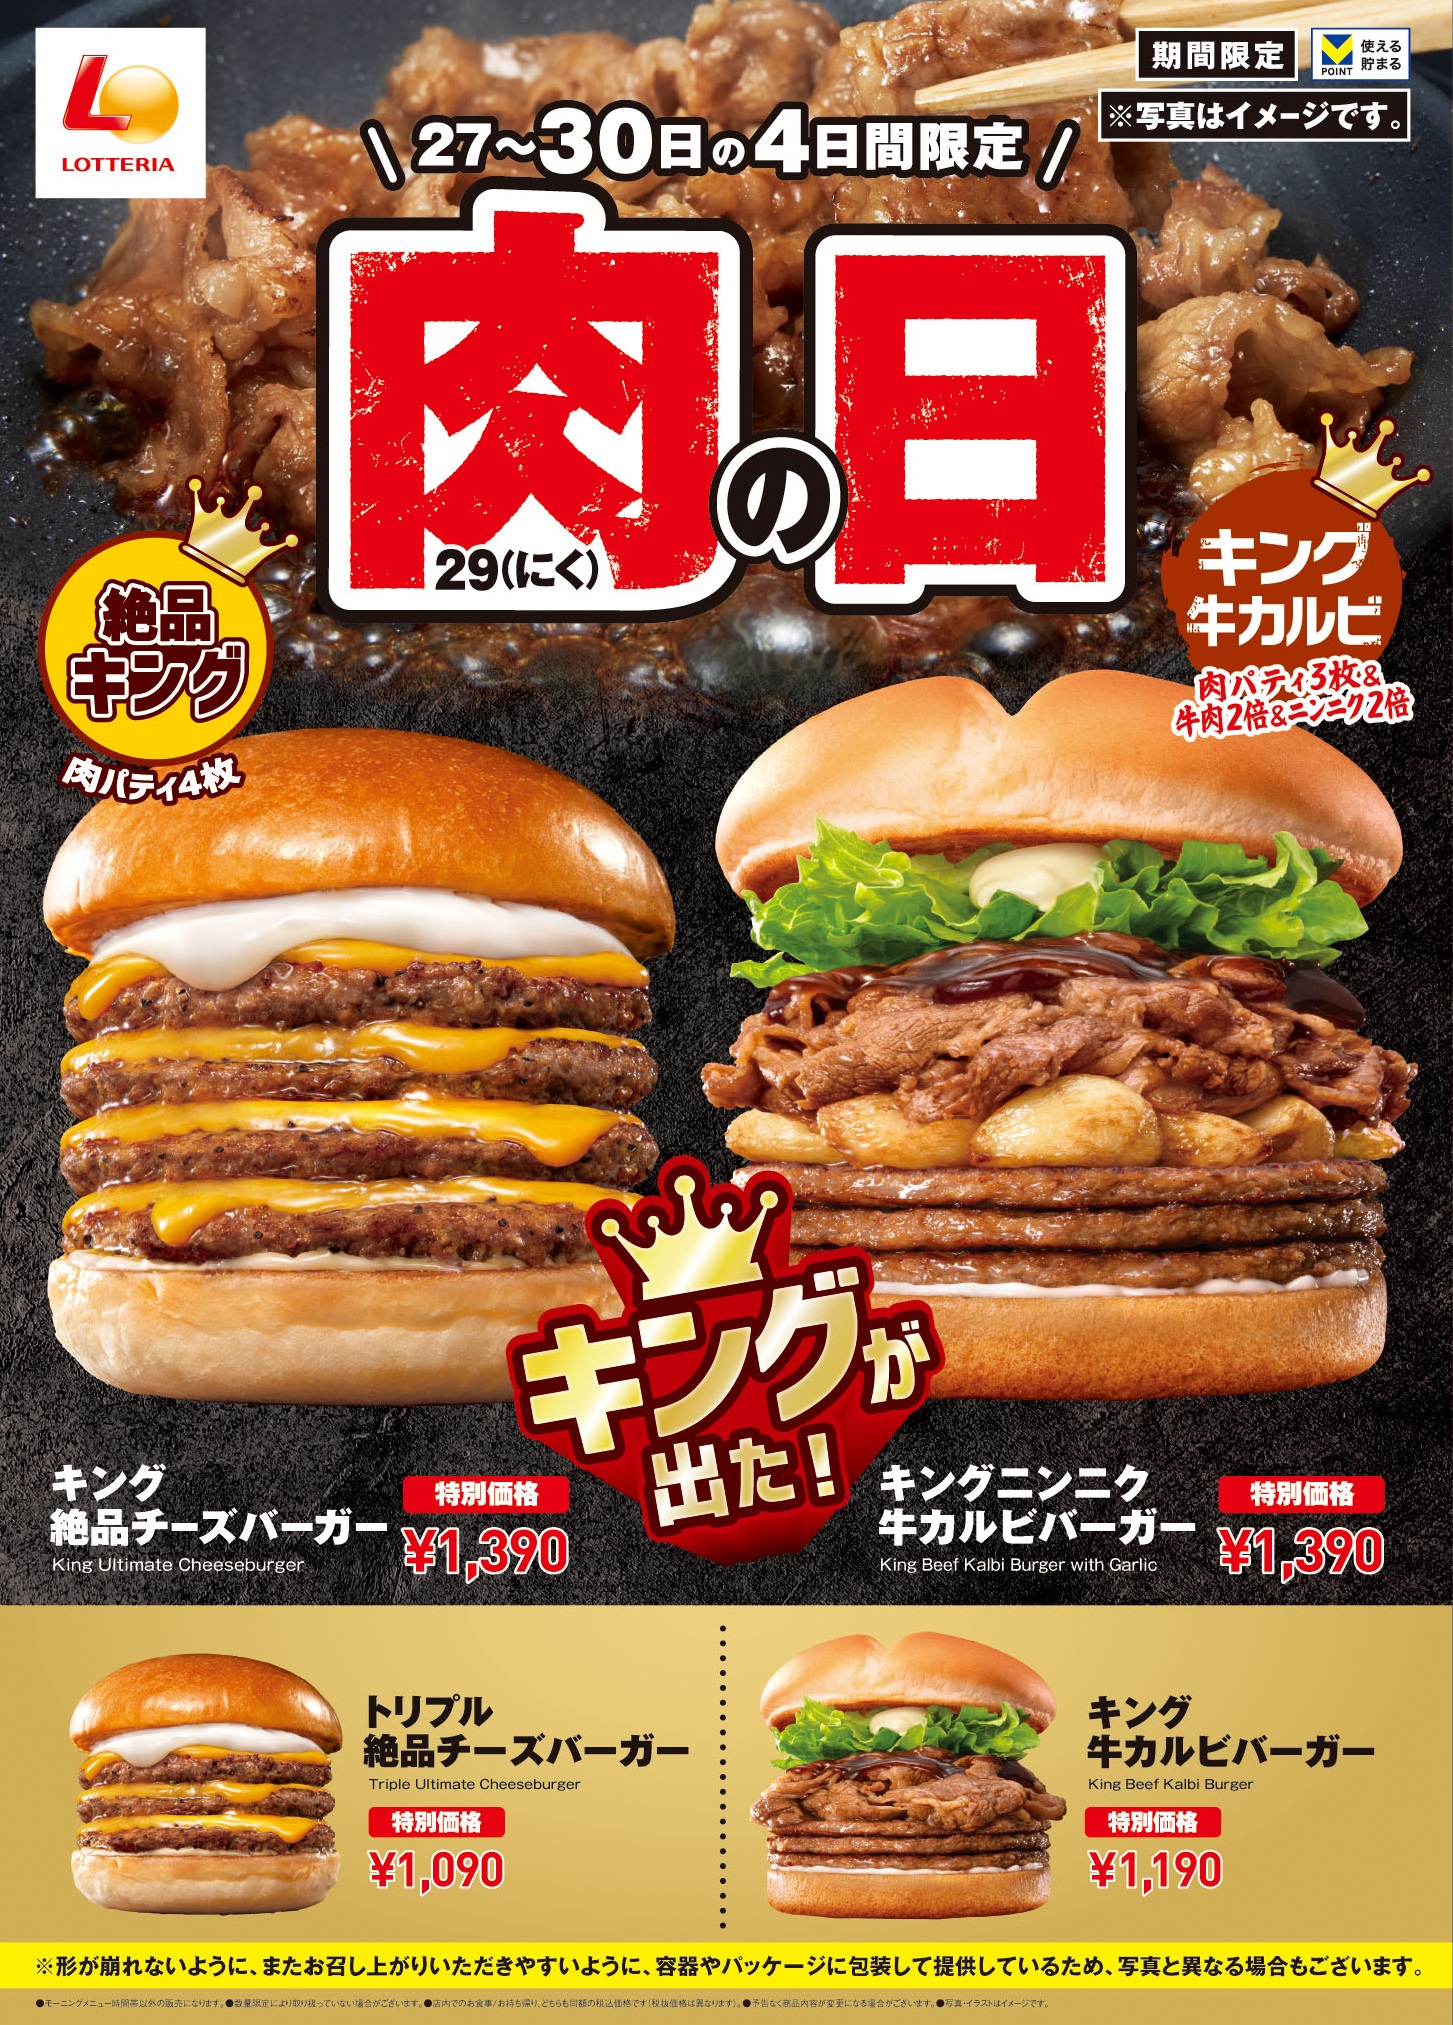 ロッテリア「肉29(にく)の日」キャンペーン